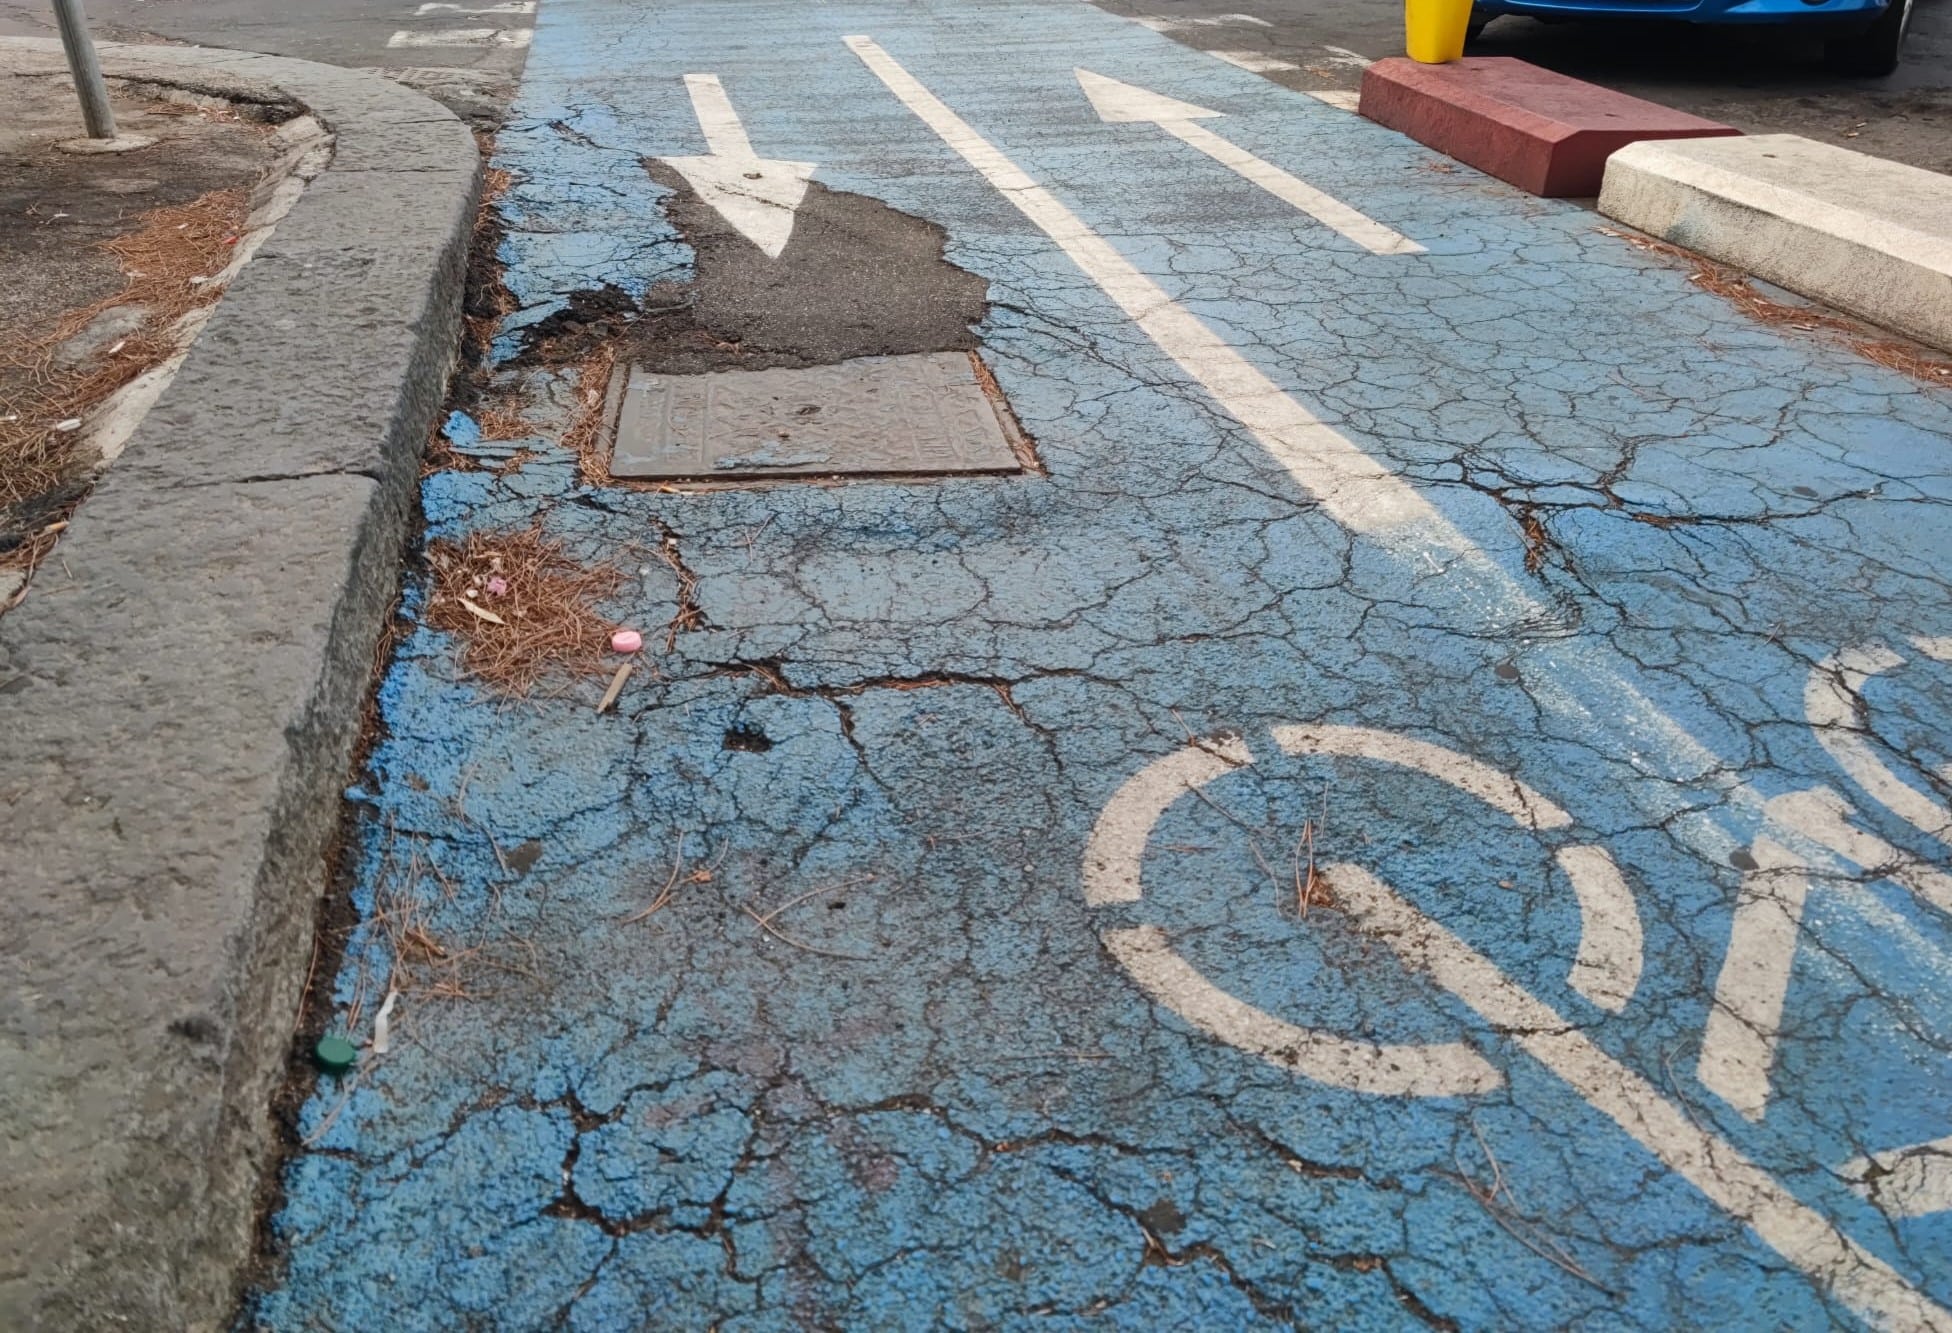 Pista ciclabile lungomare Catania, tra cordoli danneggiati e invasioni di scooter. Cardello: “Un percorso a ostacoli”